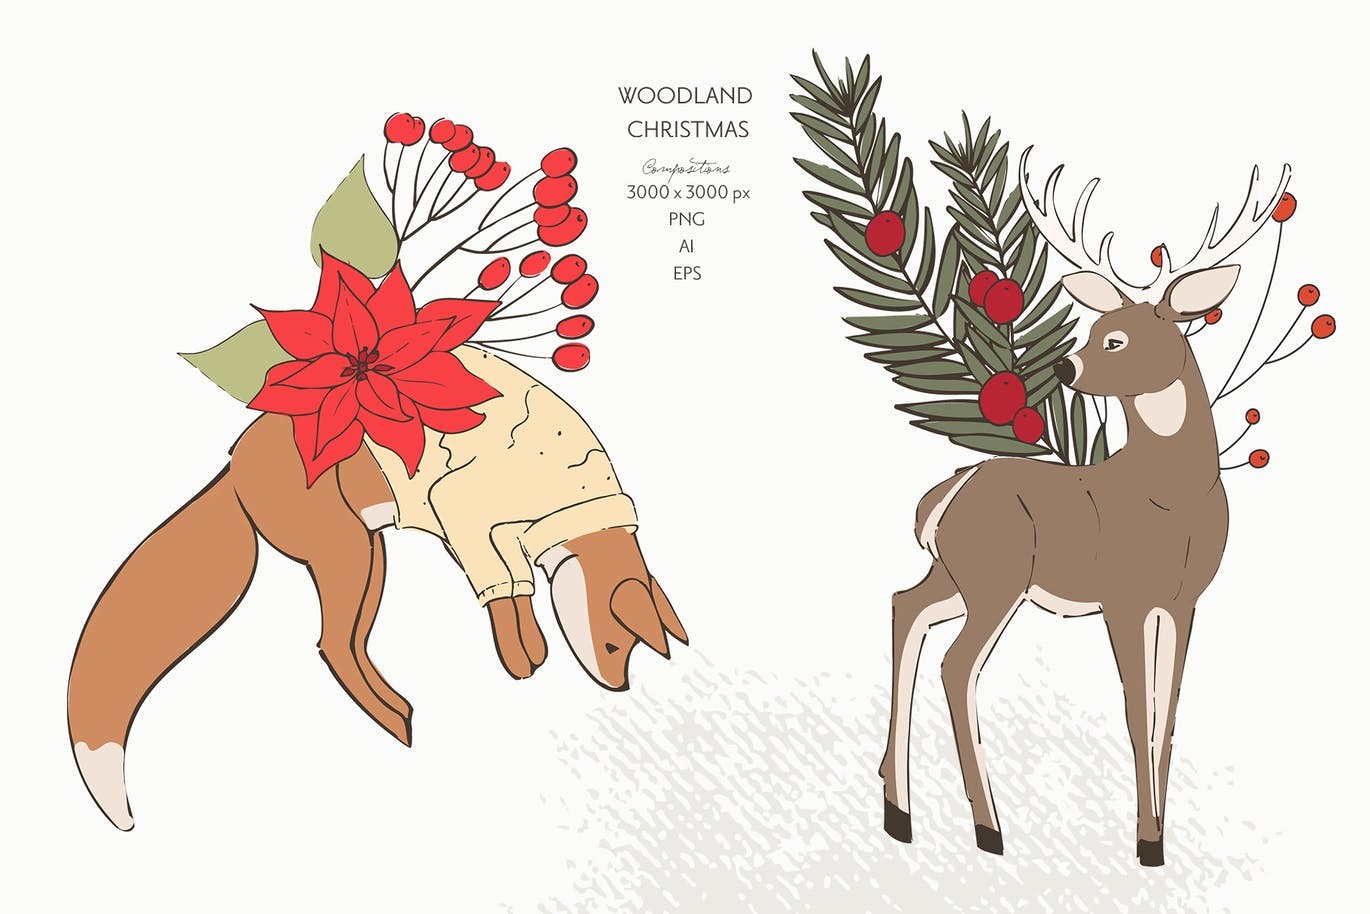 精品新年圣诞节动物植物矢量插画元素大集合-AI，PNG，EPS源文件,编号:82630620